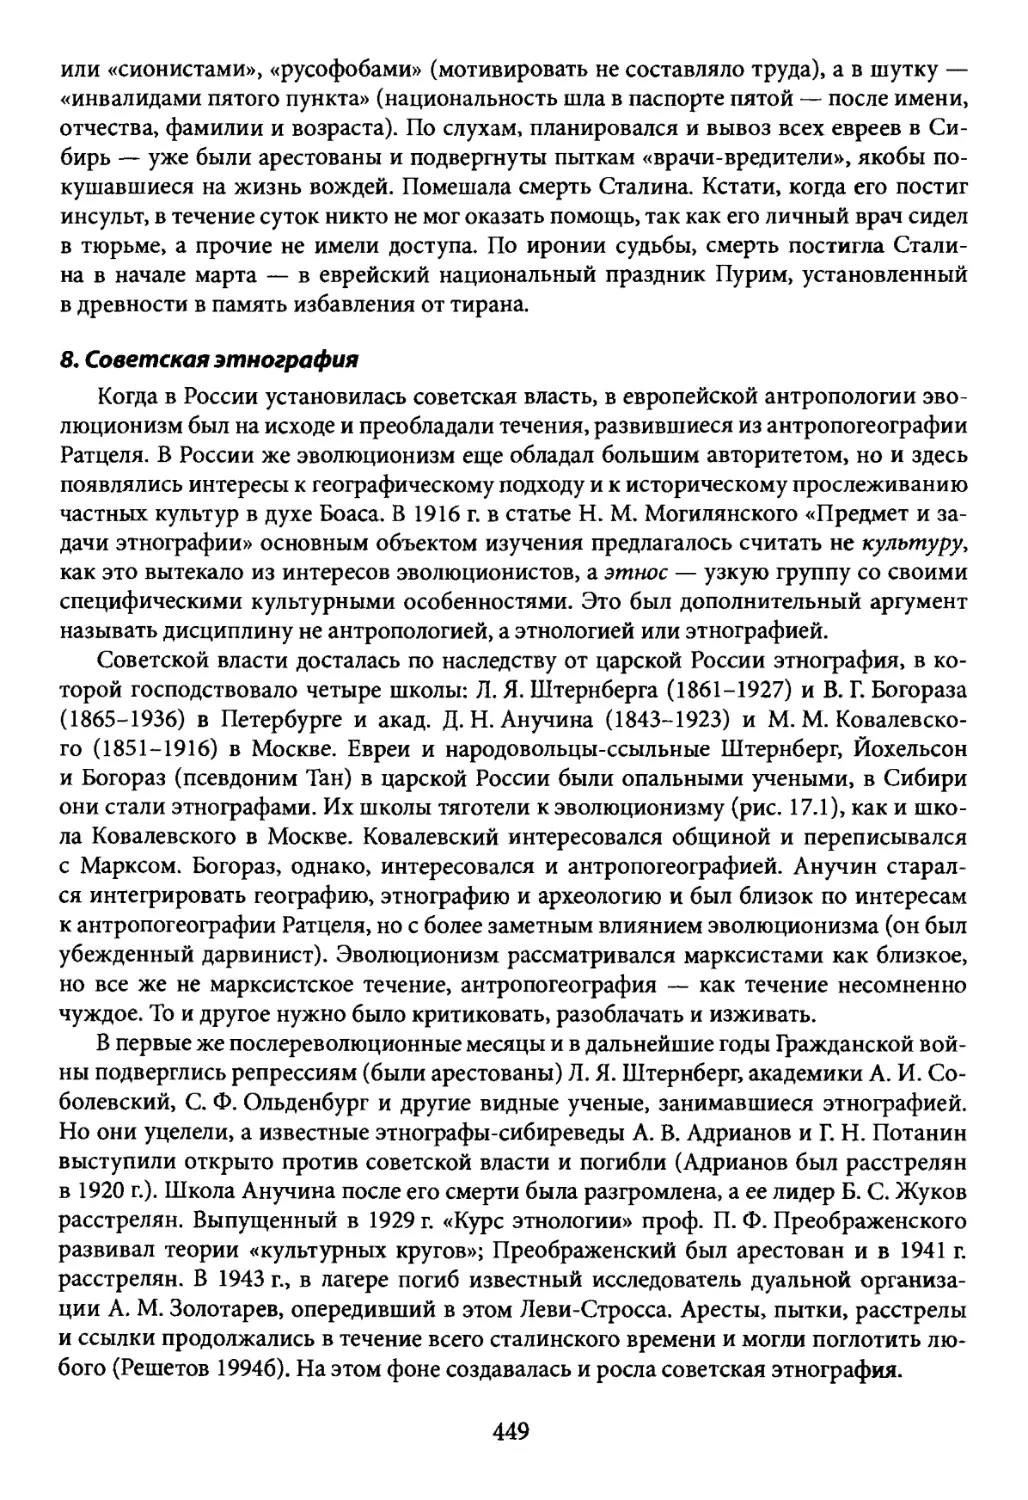 8. Советская этнография